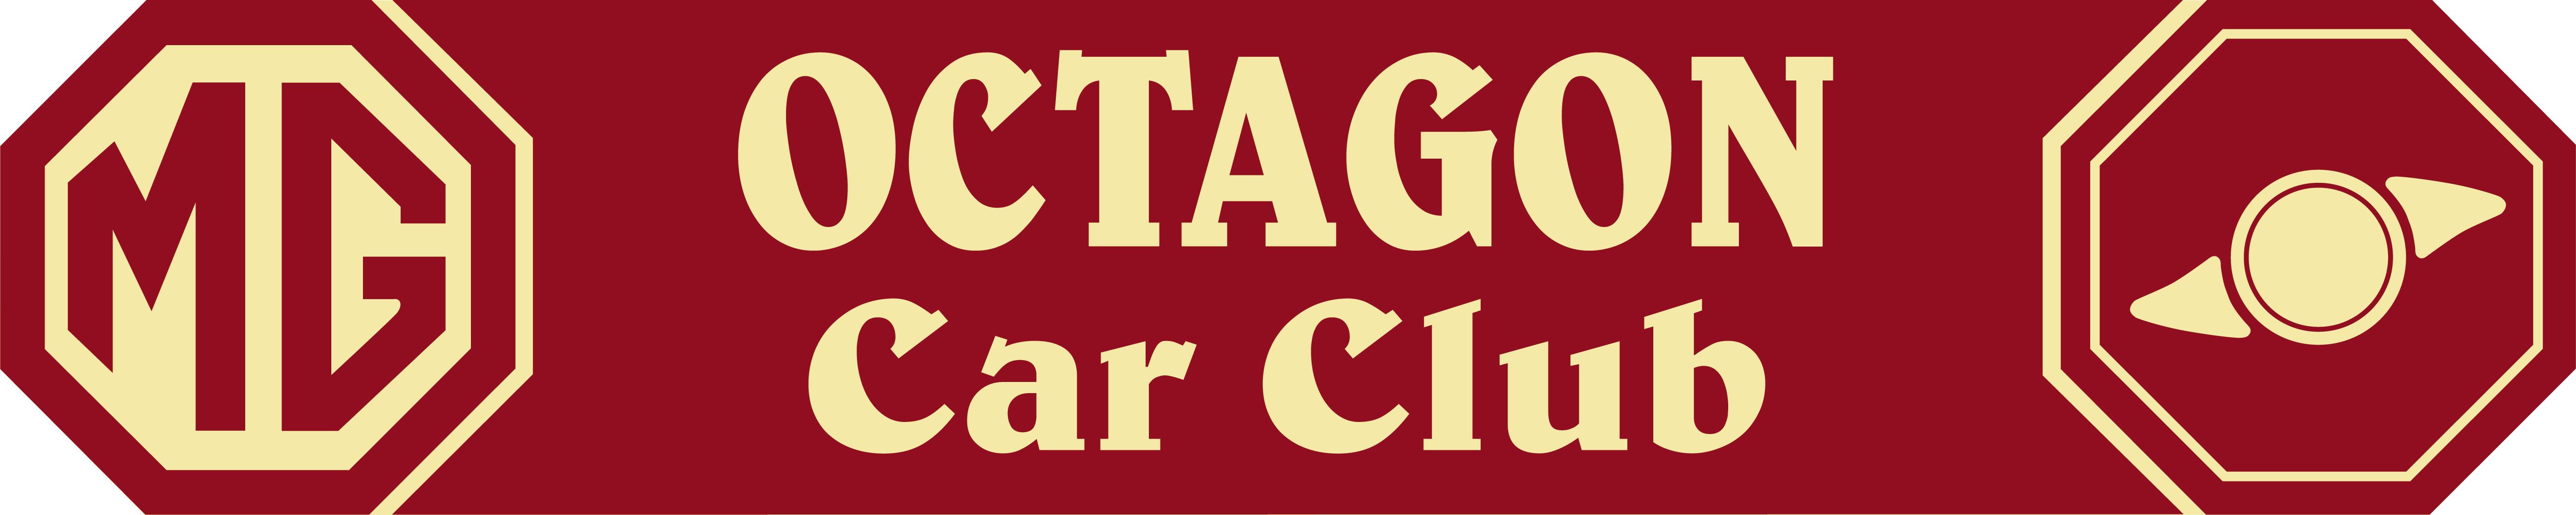 MG Octagon Car Club